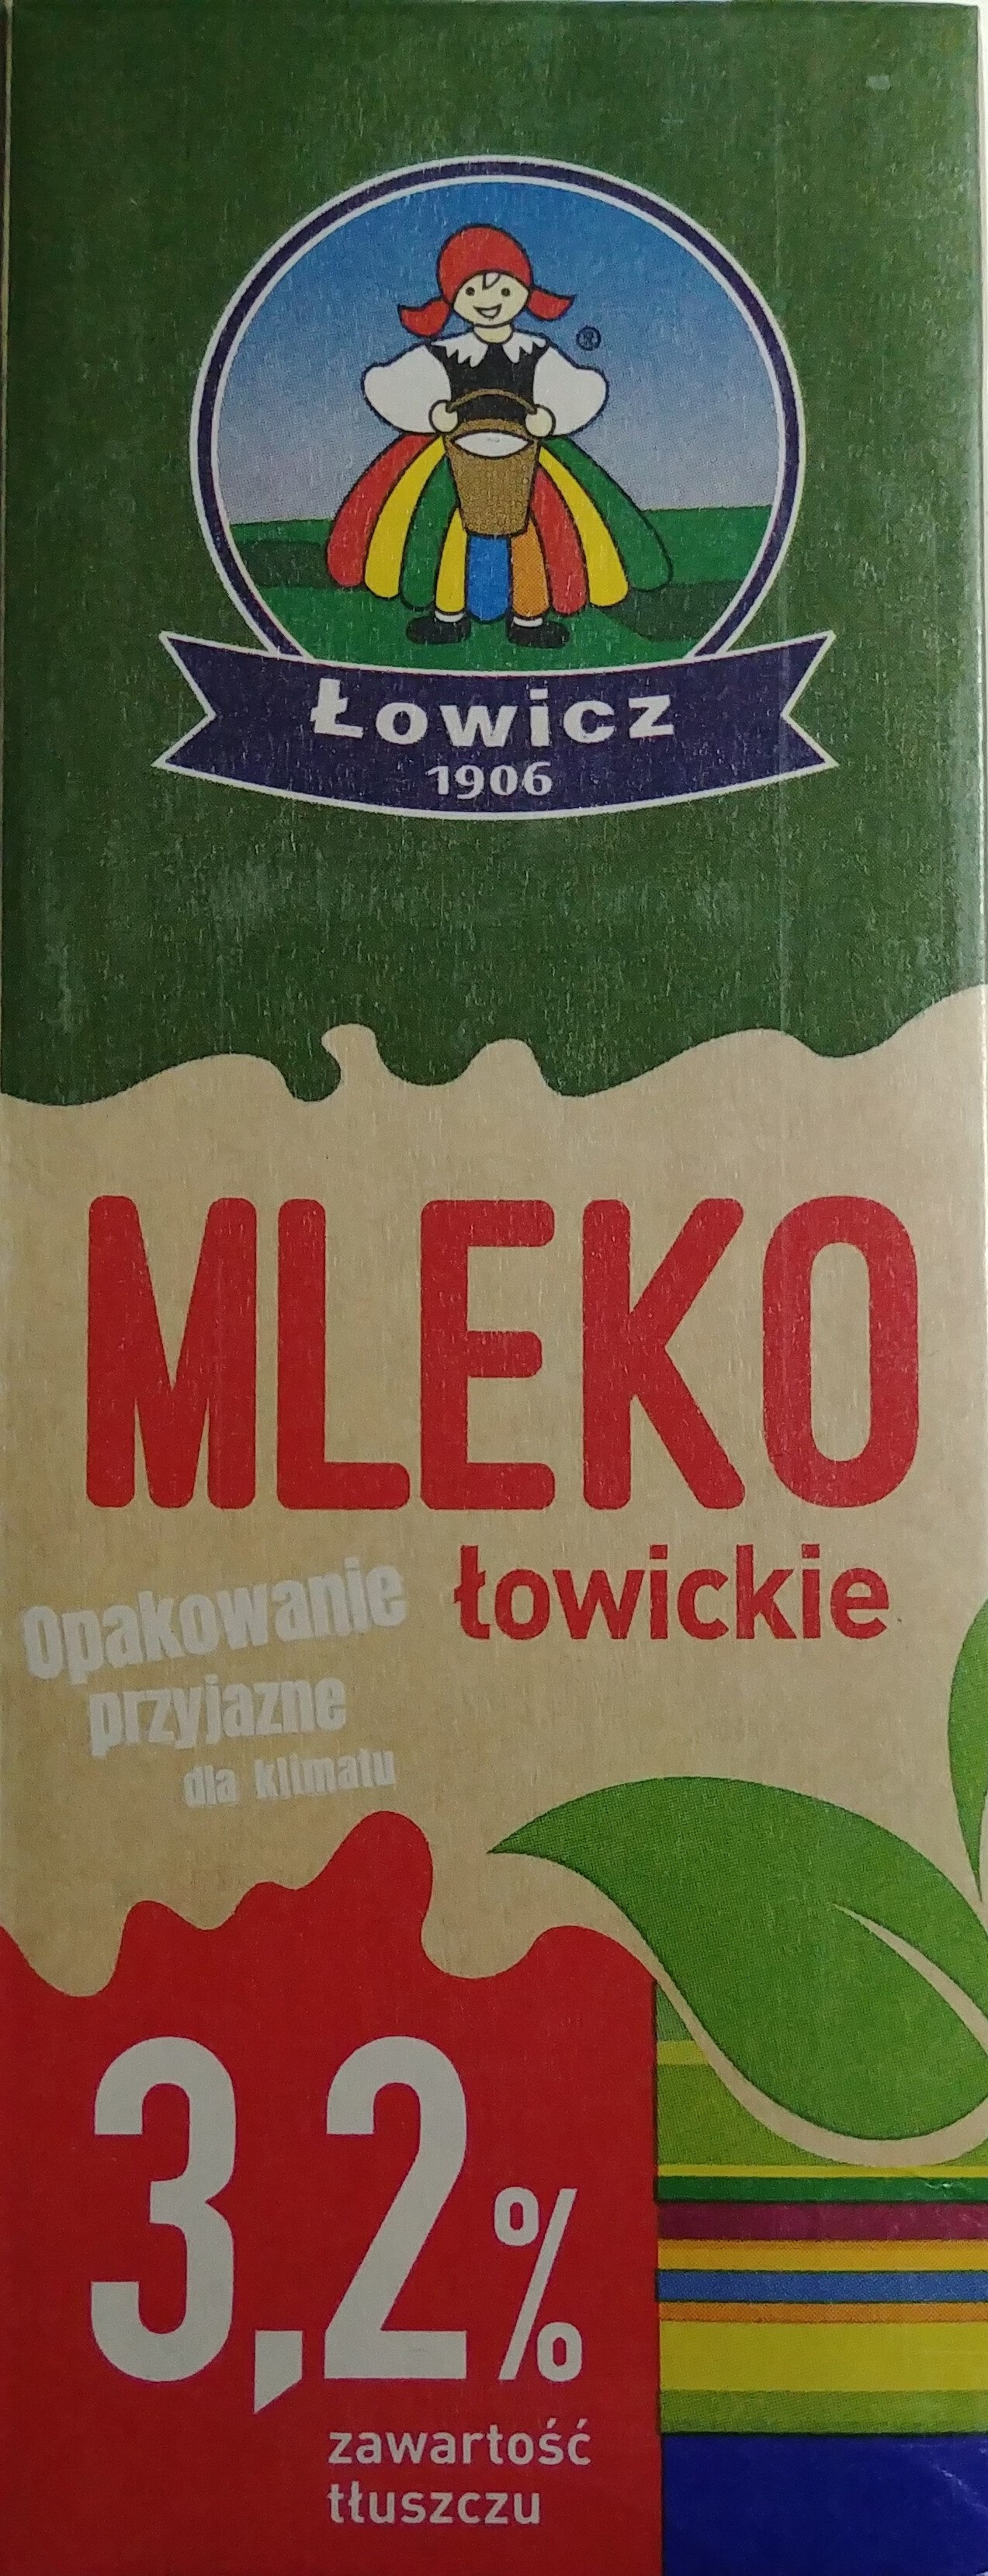 Mleko UHT - Product - pl